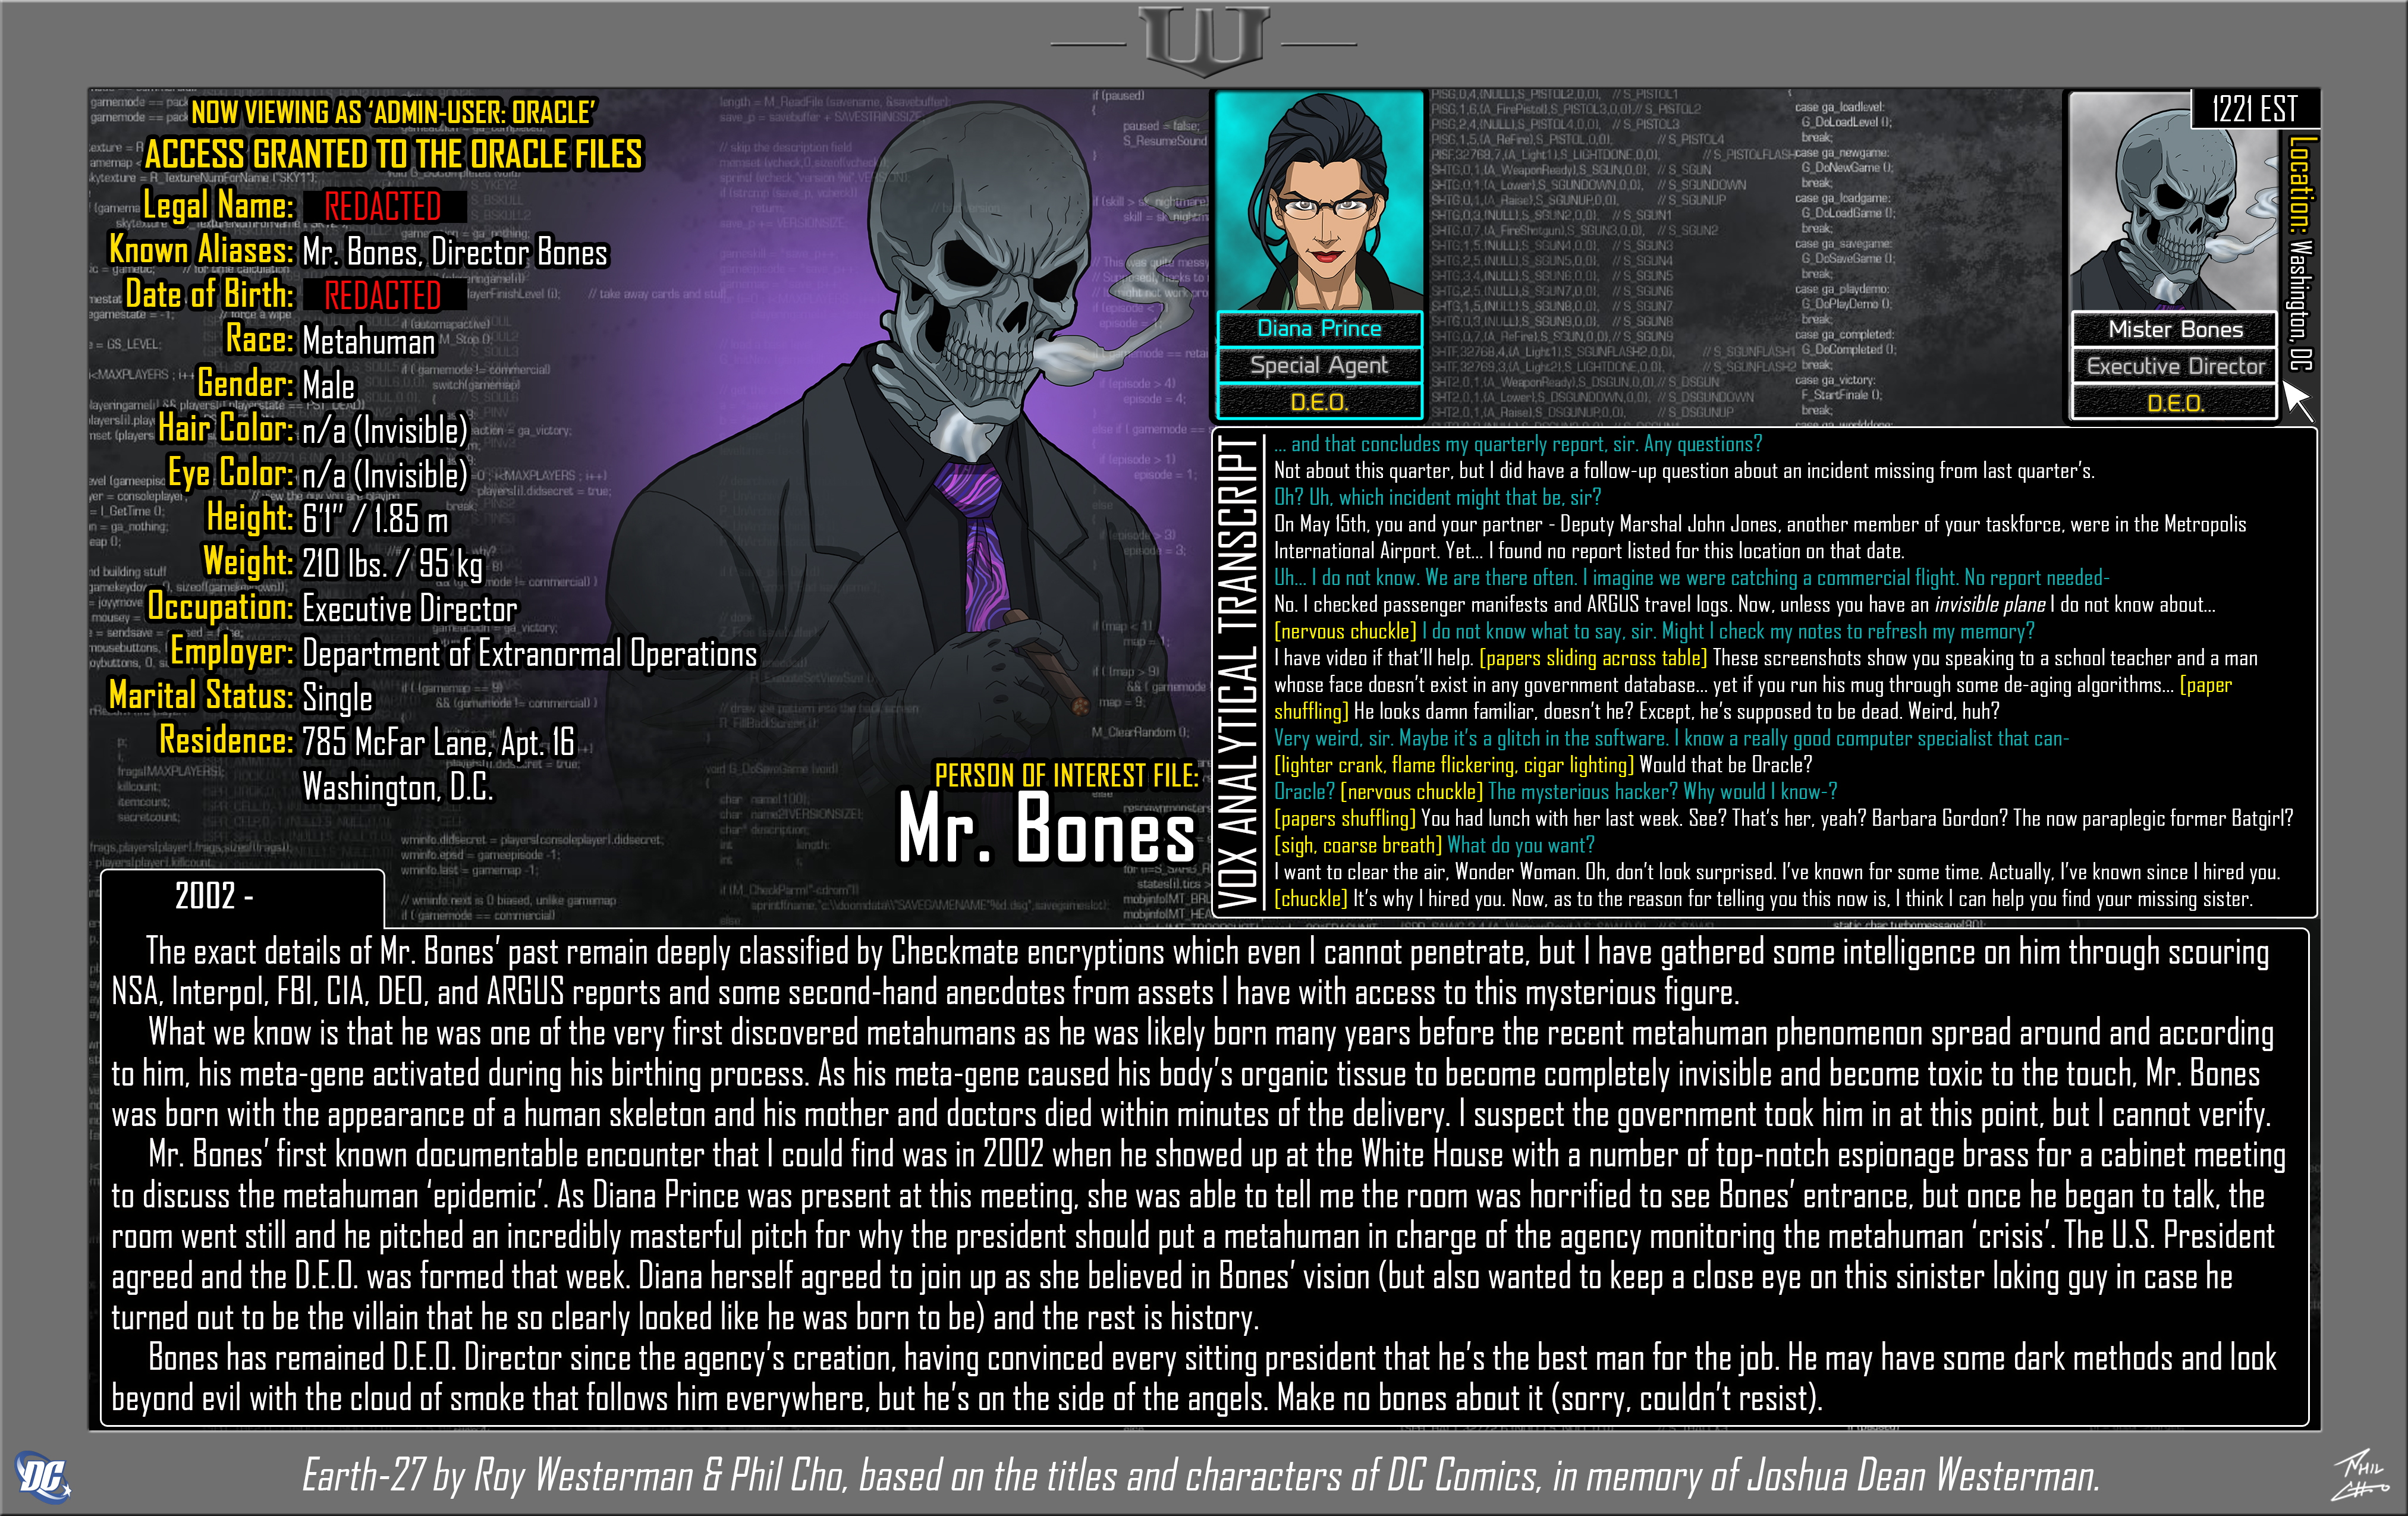 [Earth-27: Oracle Files] Mr. Bones